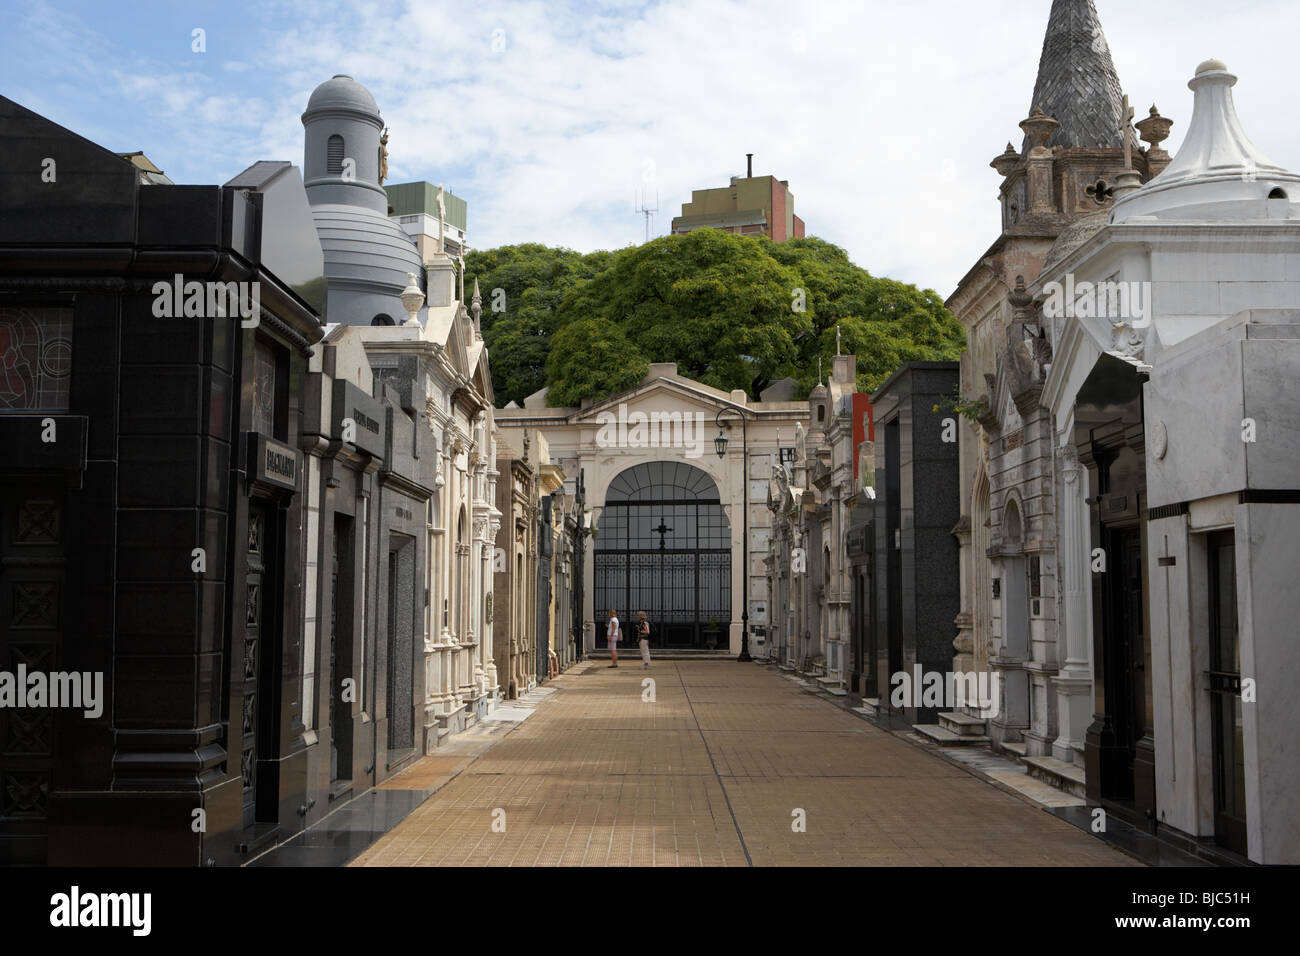 Turisti in fila di vecchi mausolei in una strada a Recoleta cimitero Capital Federal Buenos Aires Foto Stock